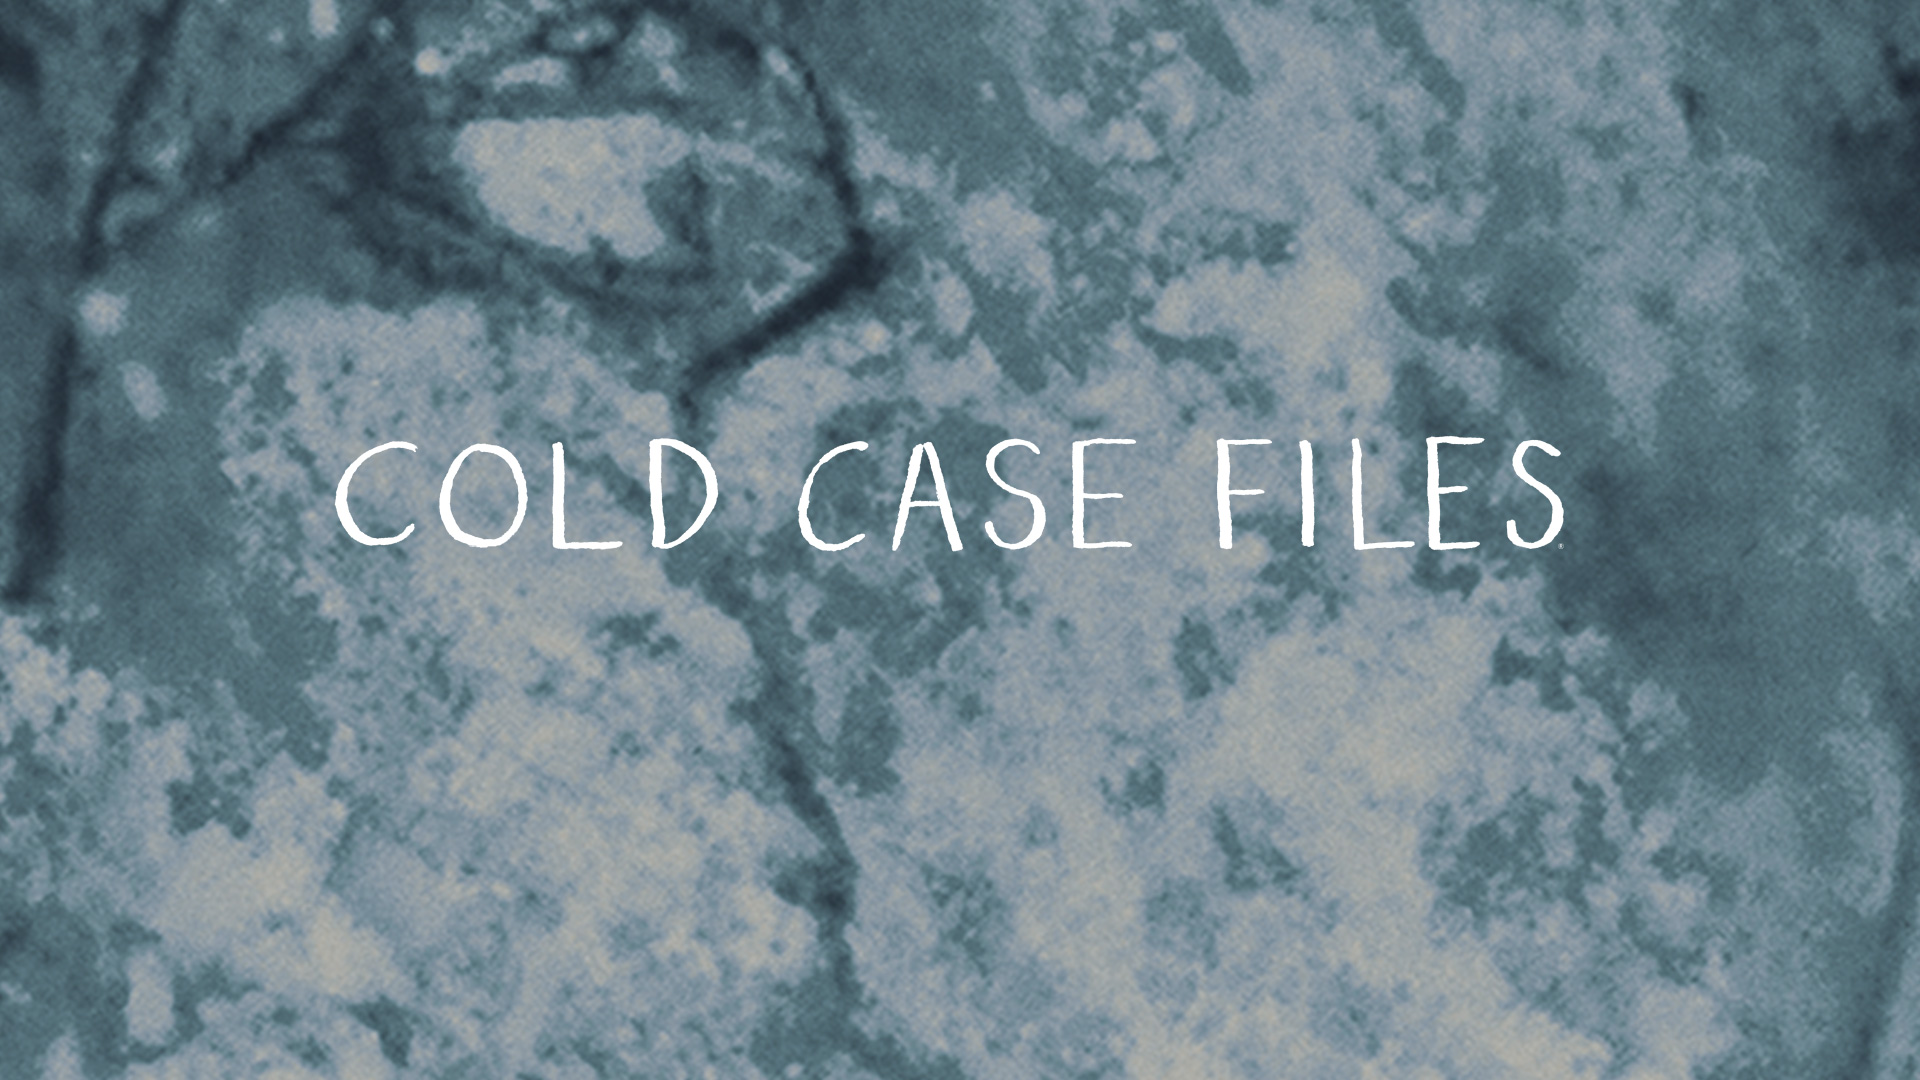 a&e cold case files